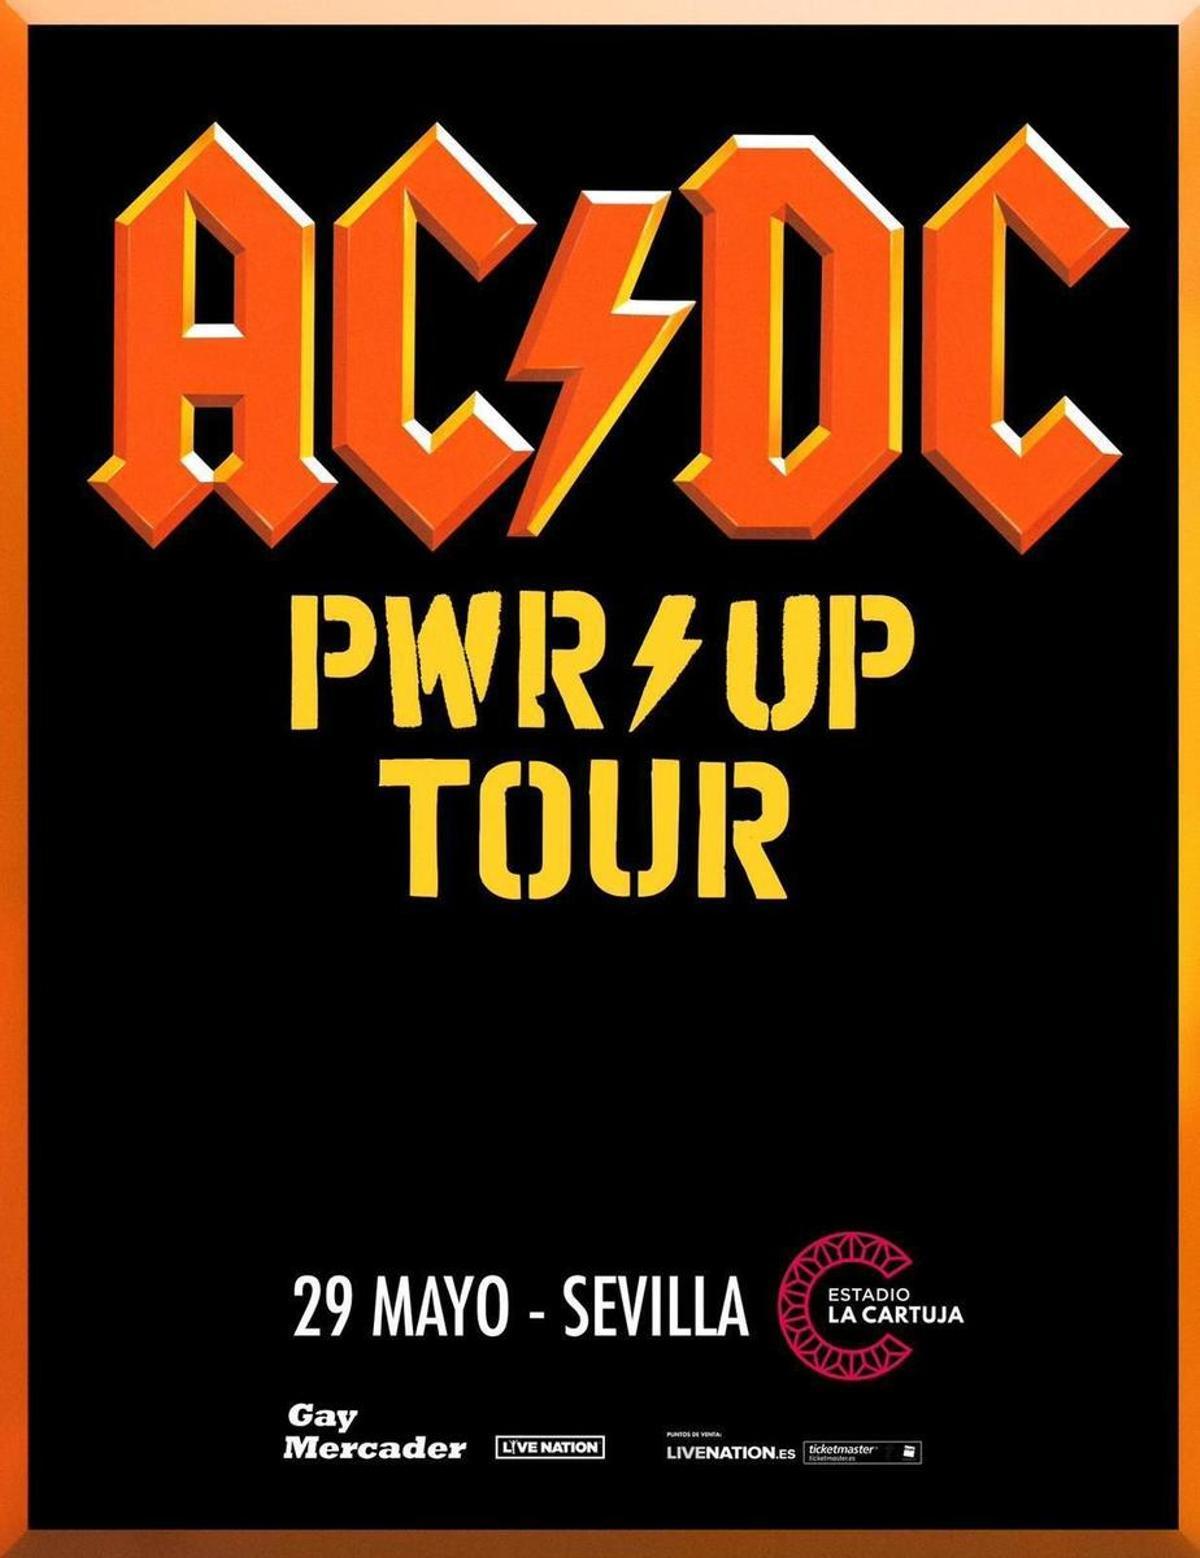 El cartel del concierto de AC/DC en Sevilla.